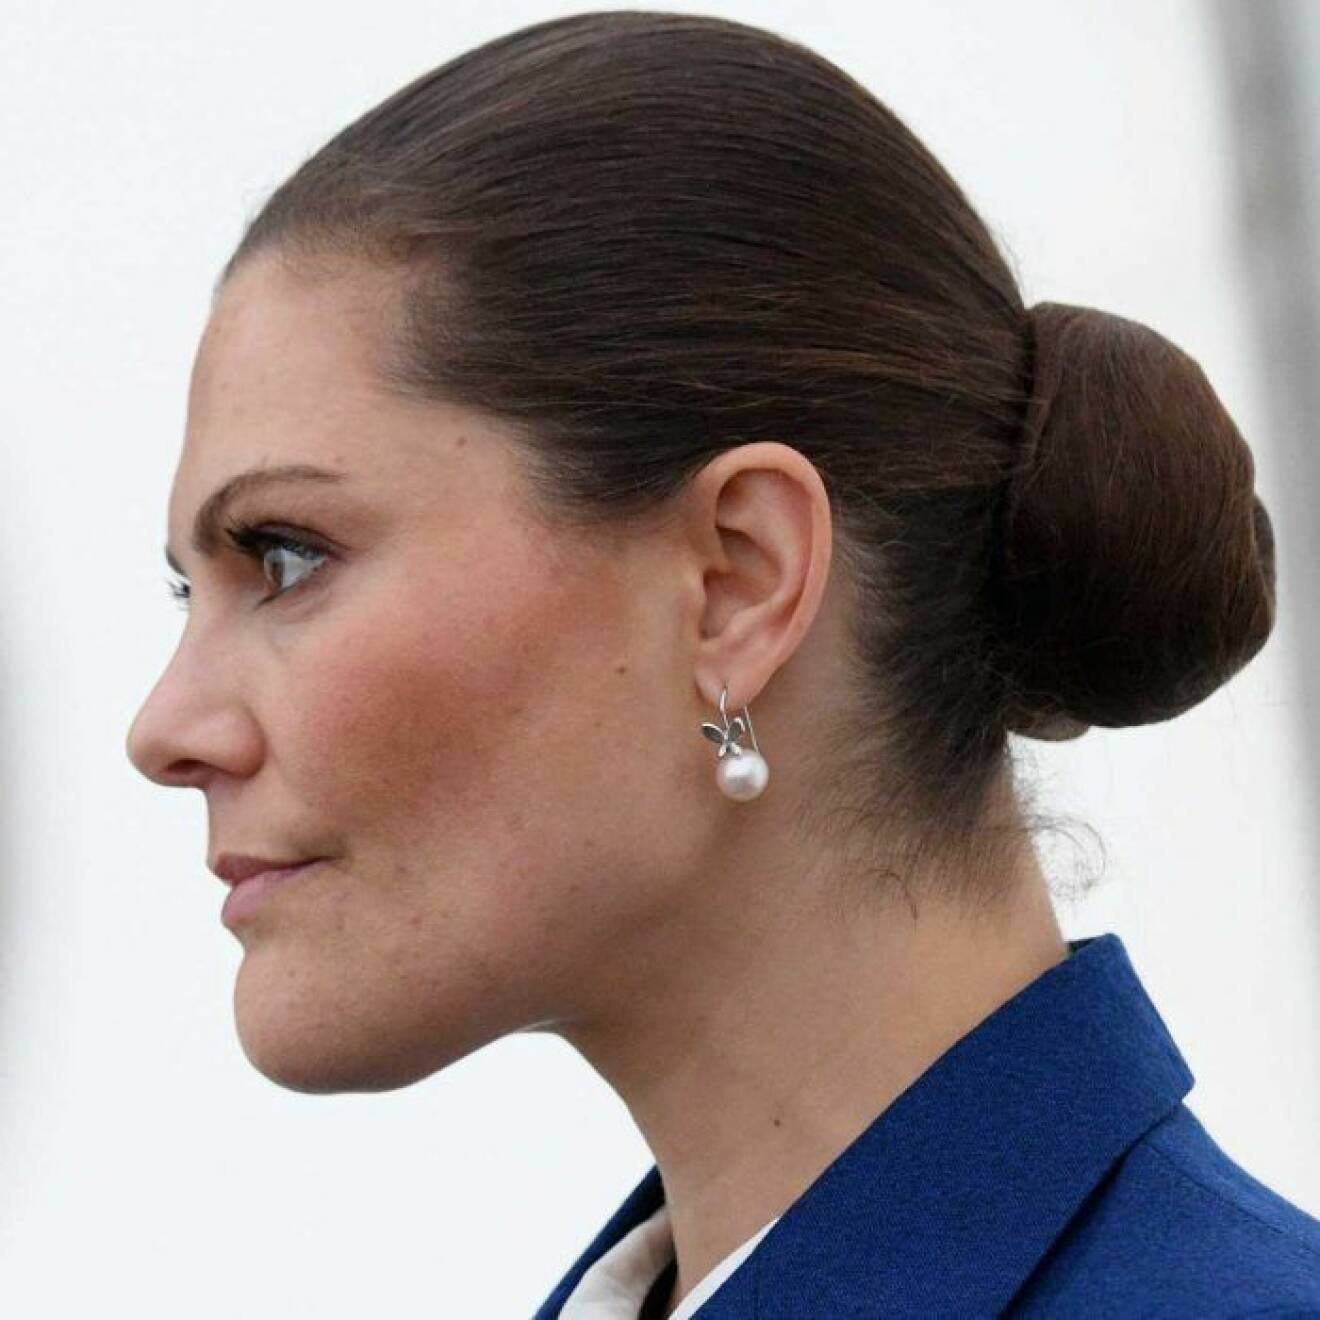 Hårknuten som har blivit kronprinsessan Victorias signum. Inte ett hårstrå ligger fel.